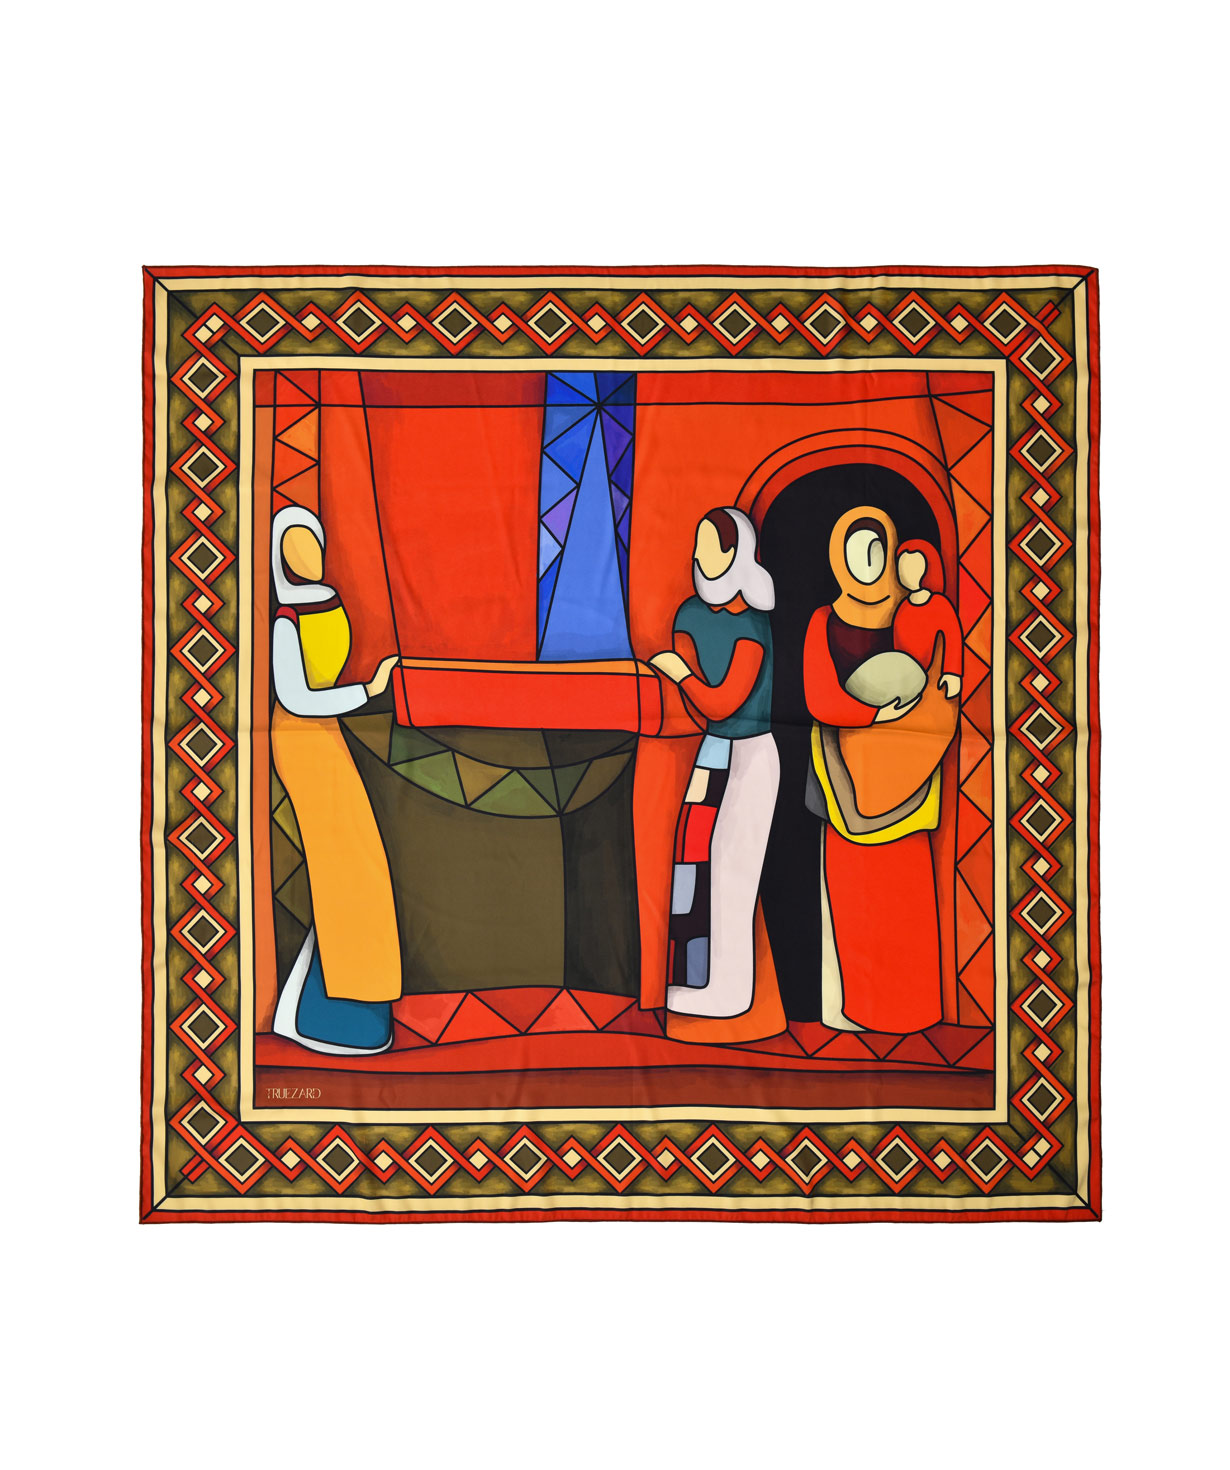 Scarf `Armenian painters` Minas, red, medium